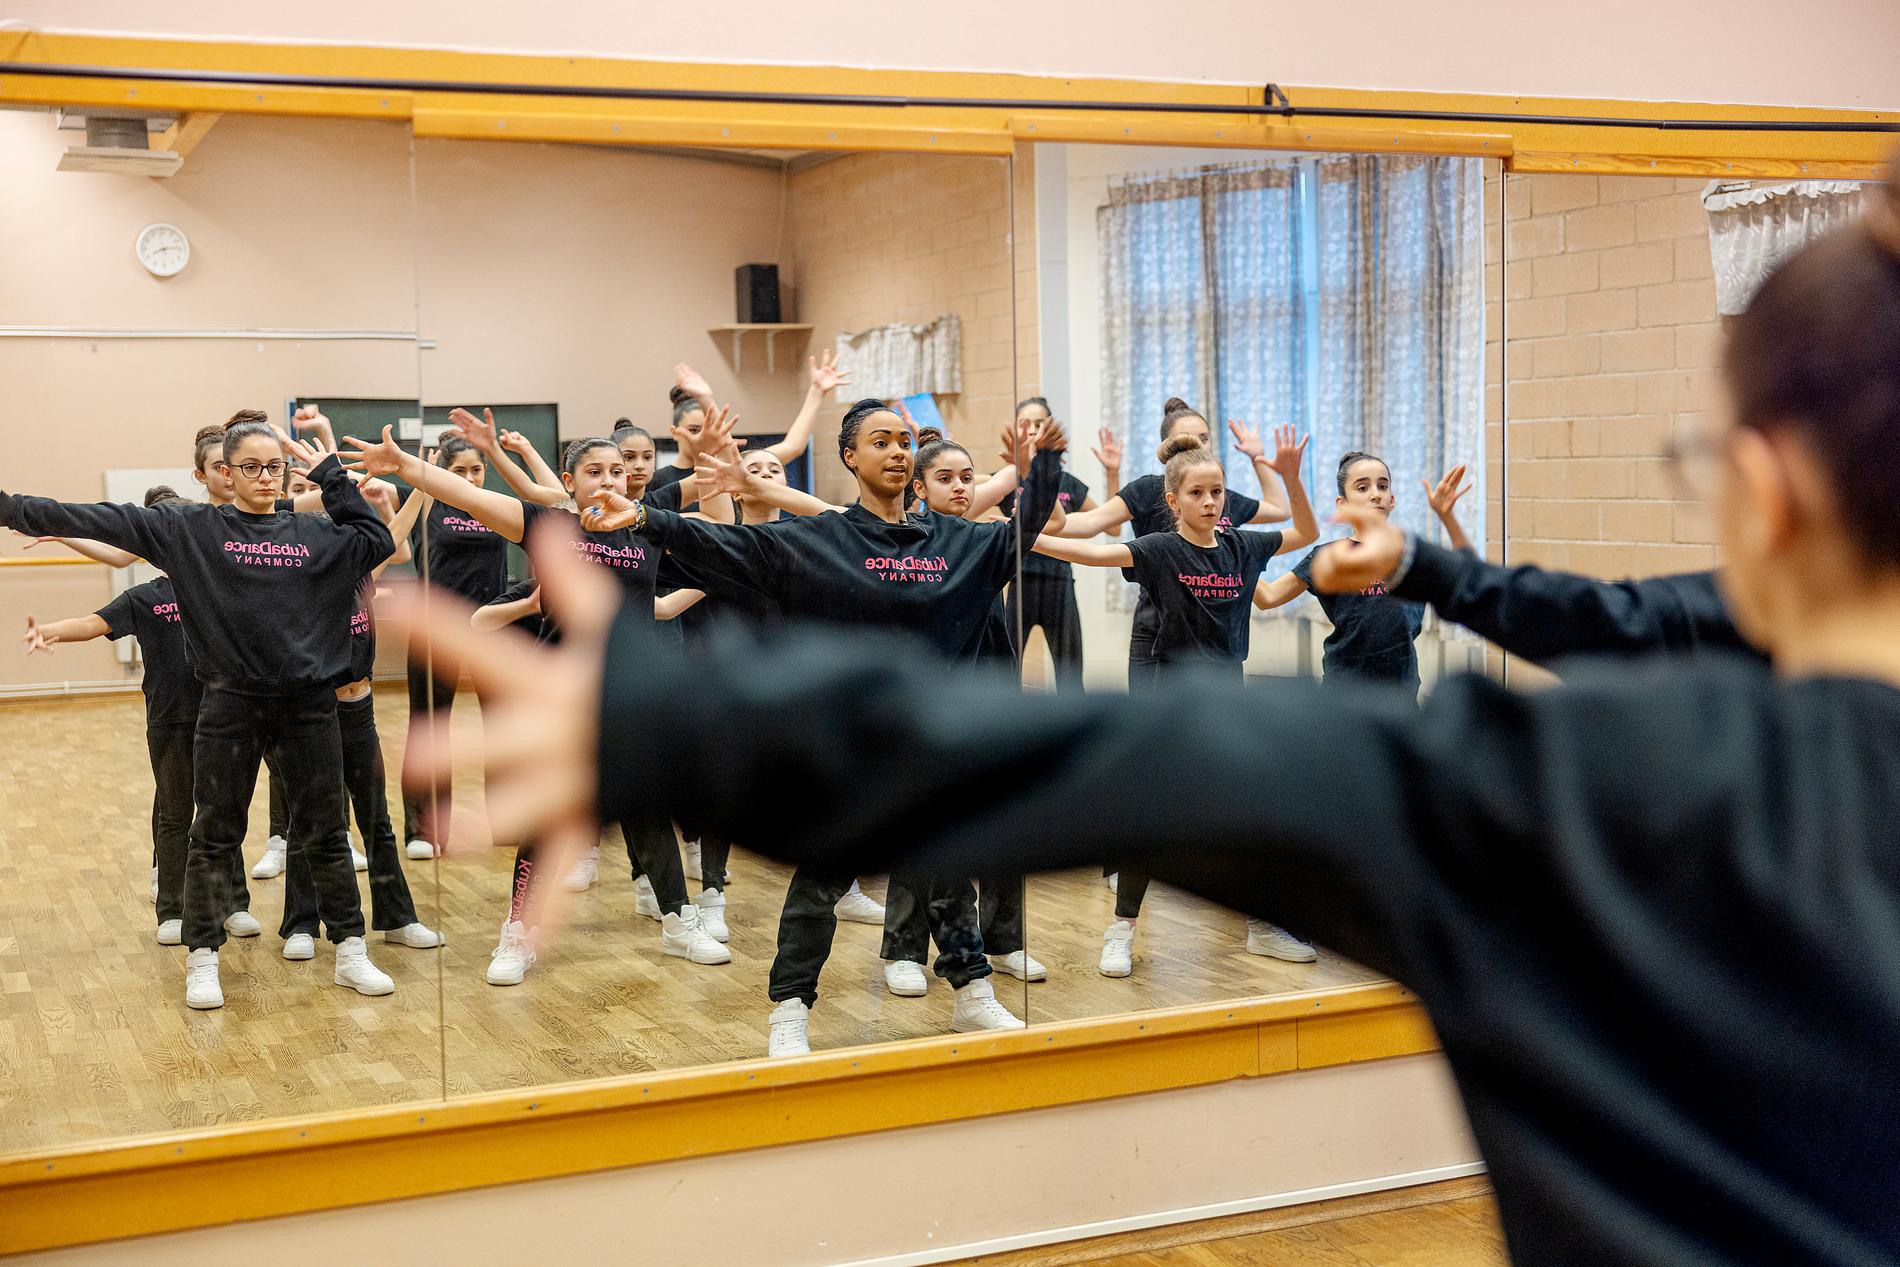 Dansgruppen från Södertälje gör succé i ”Talang”, samtidigt får de kämpa för att hitta träningslokal.